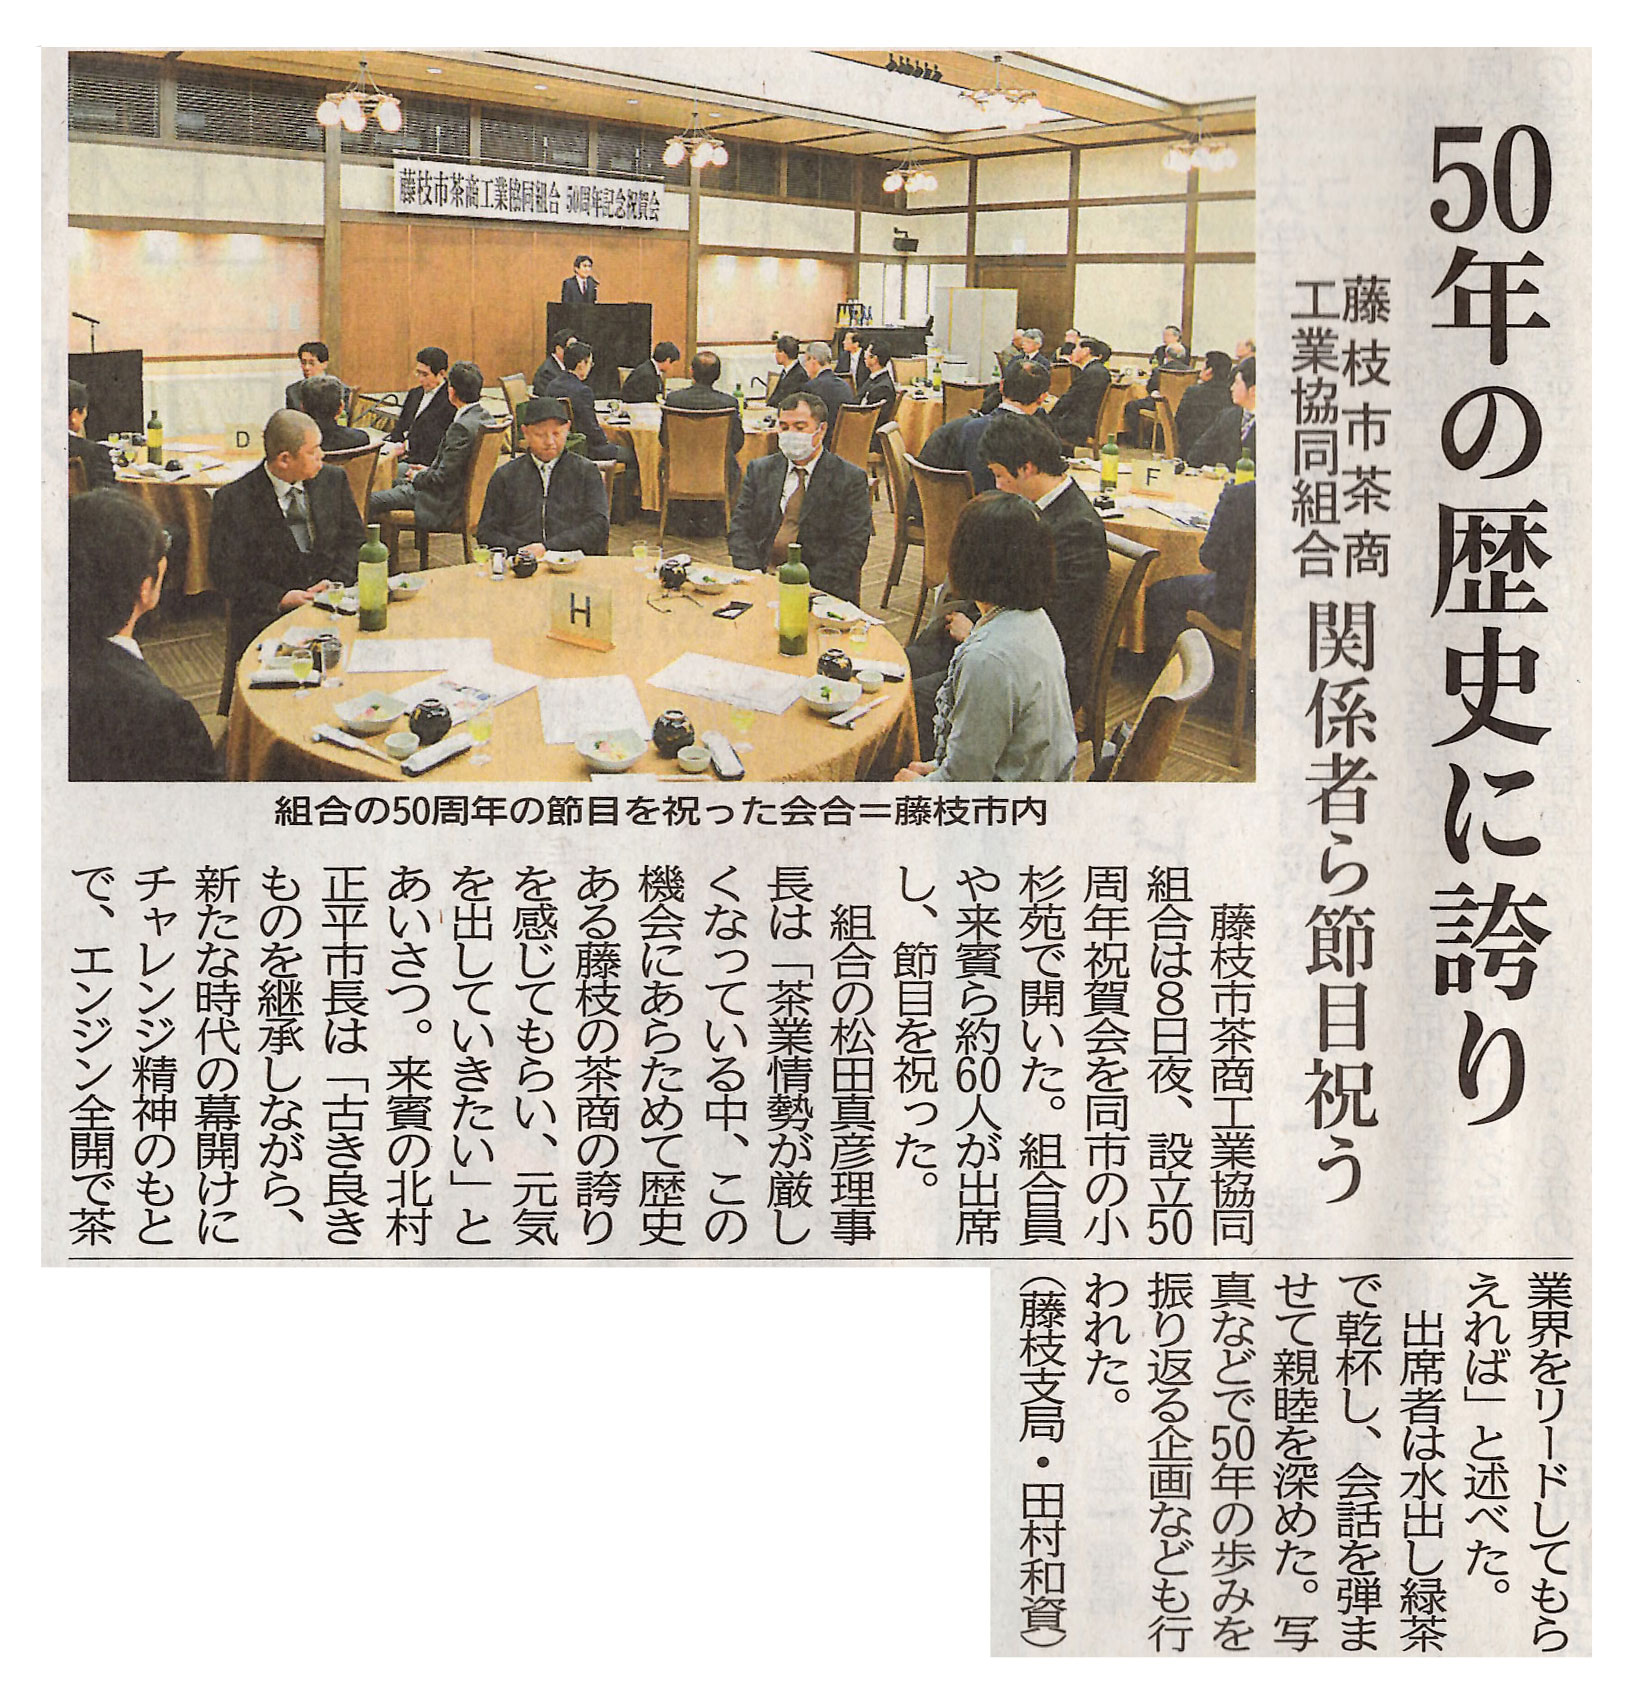 2019年2月 静岡新聞　当主(松田真彦)が理事長を務める、藤枝市茶商工業協同組合が創立50周年を迎えた式典を開催し、掲載されました。